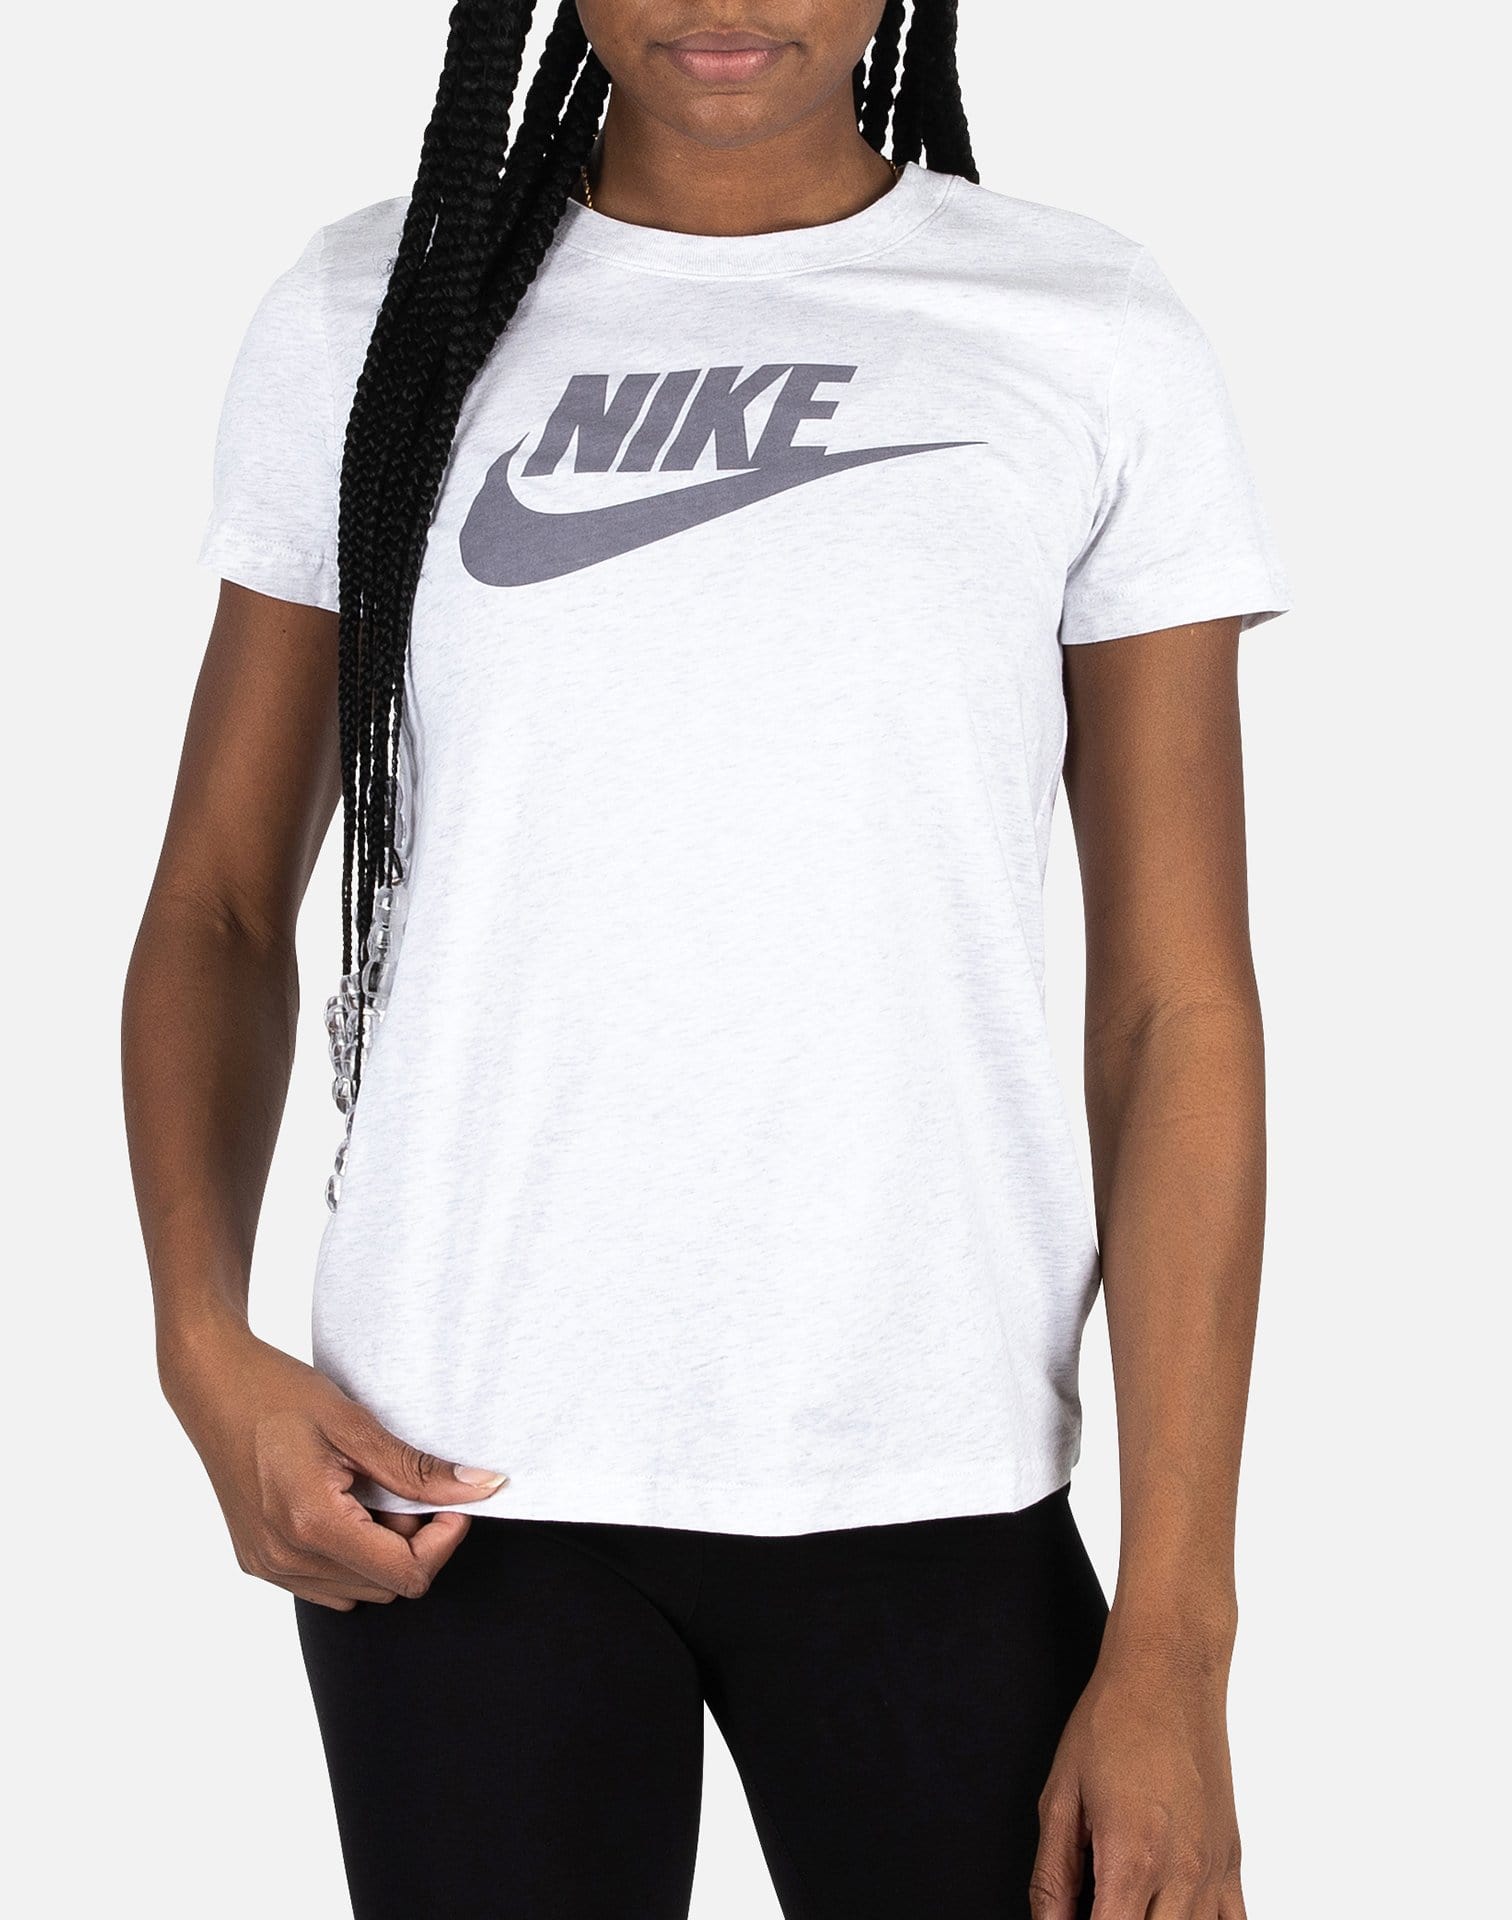 Minimalist Design Nike Logo shirt - Peanutstee